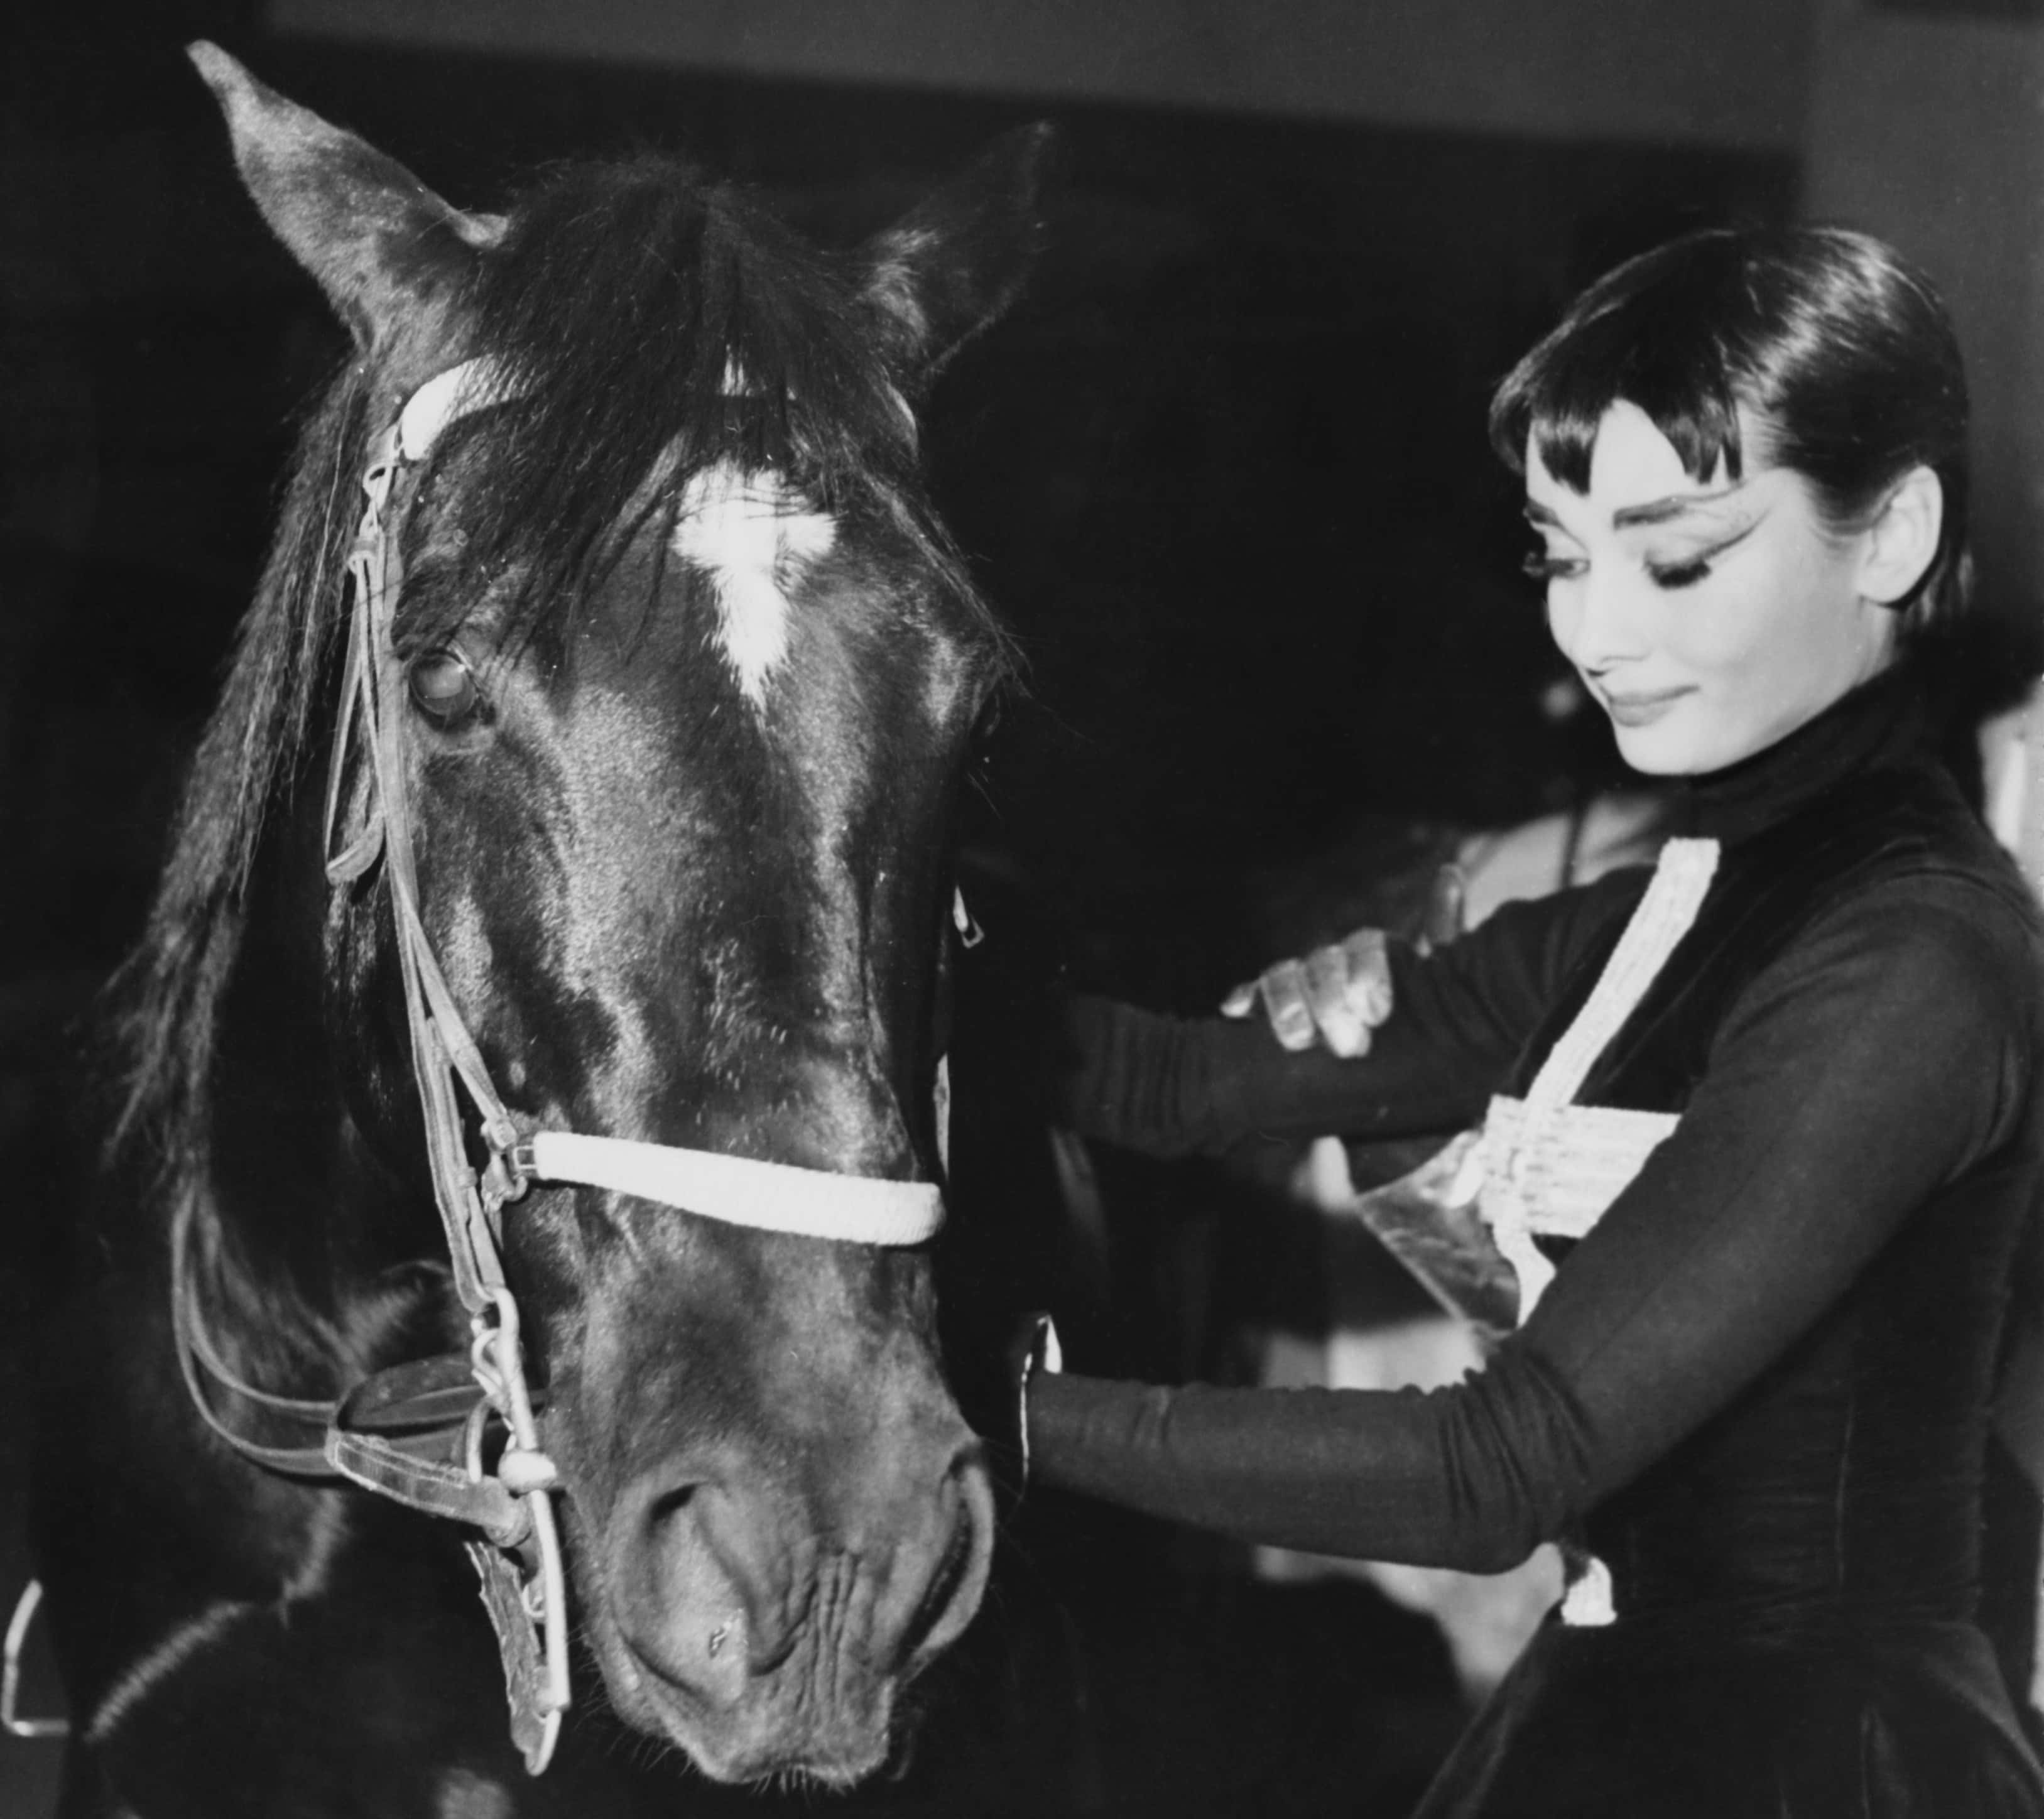 Audrey Hepburn Facts